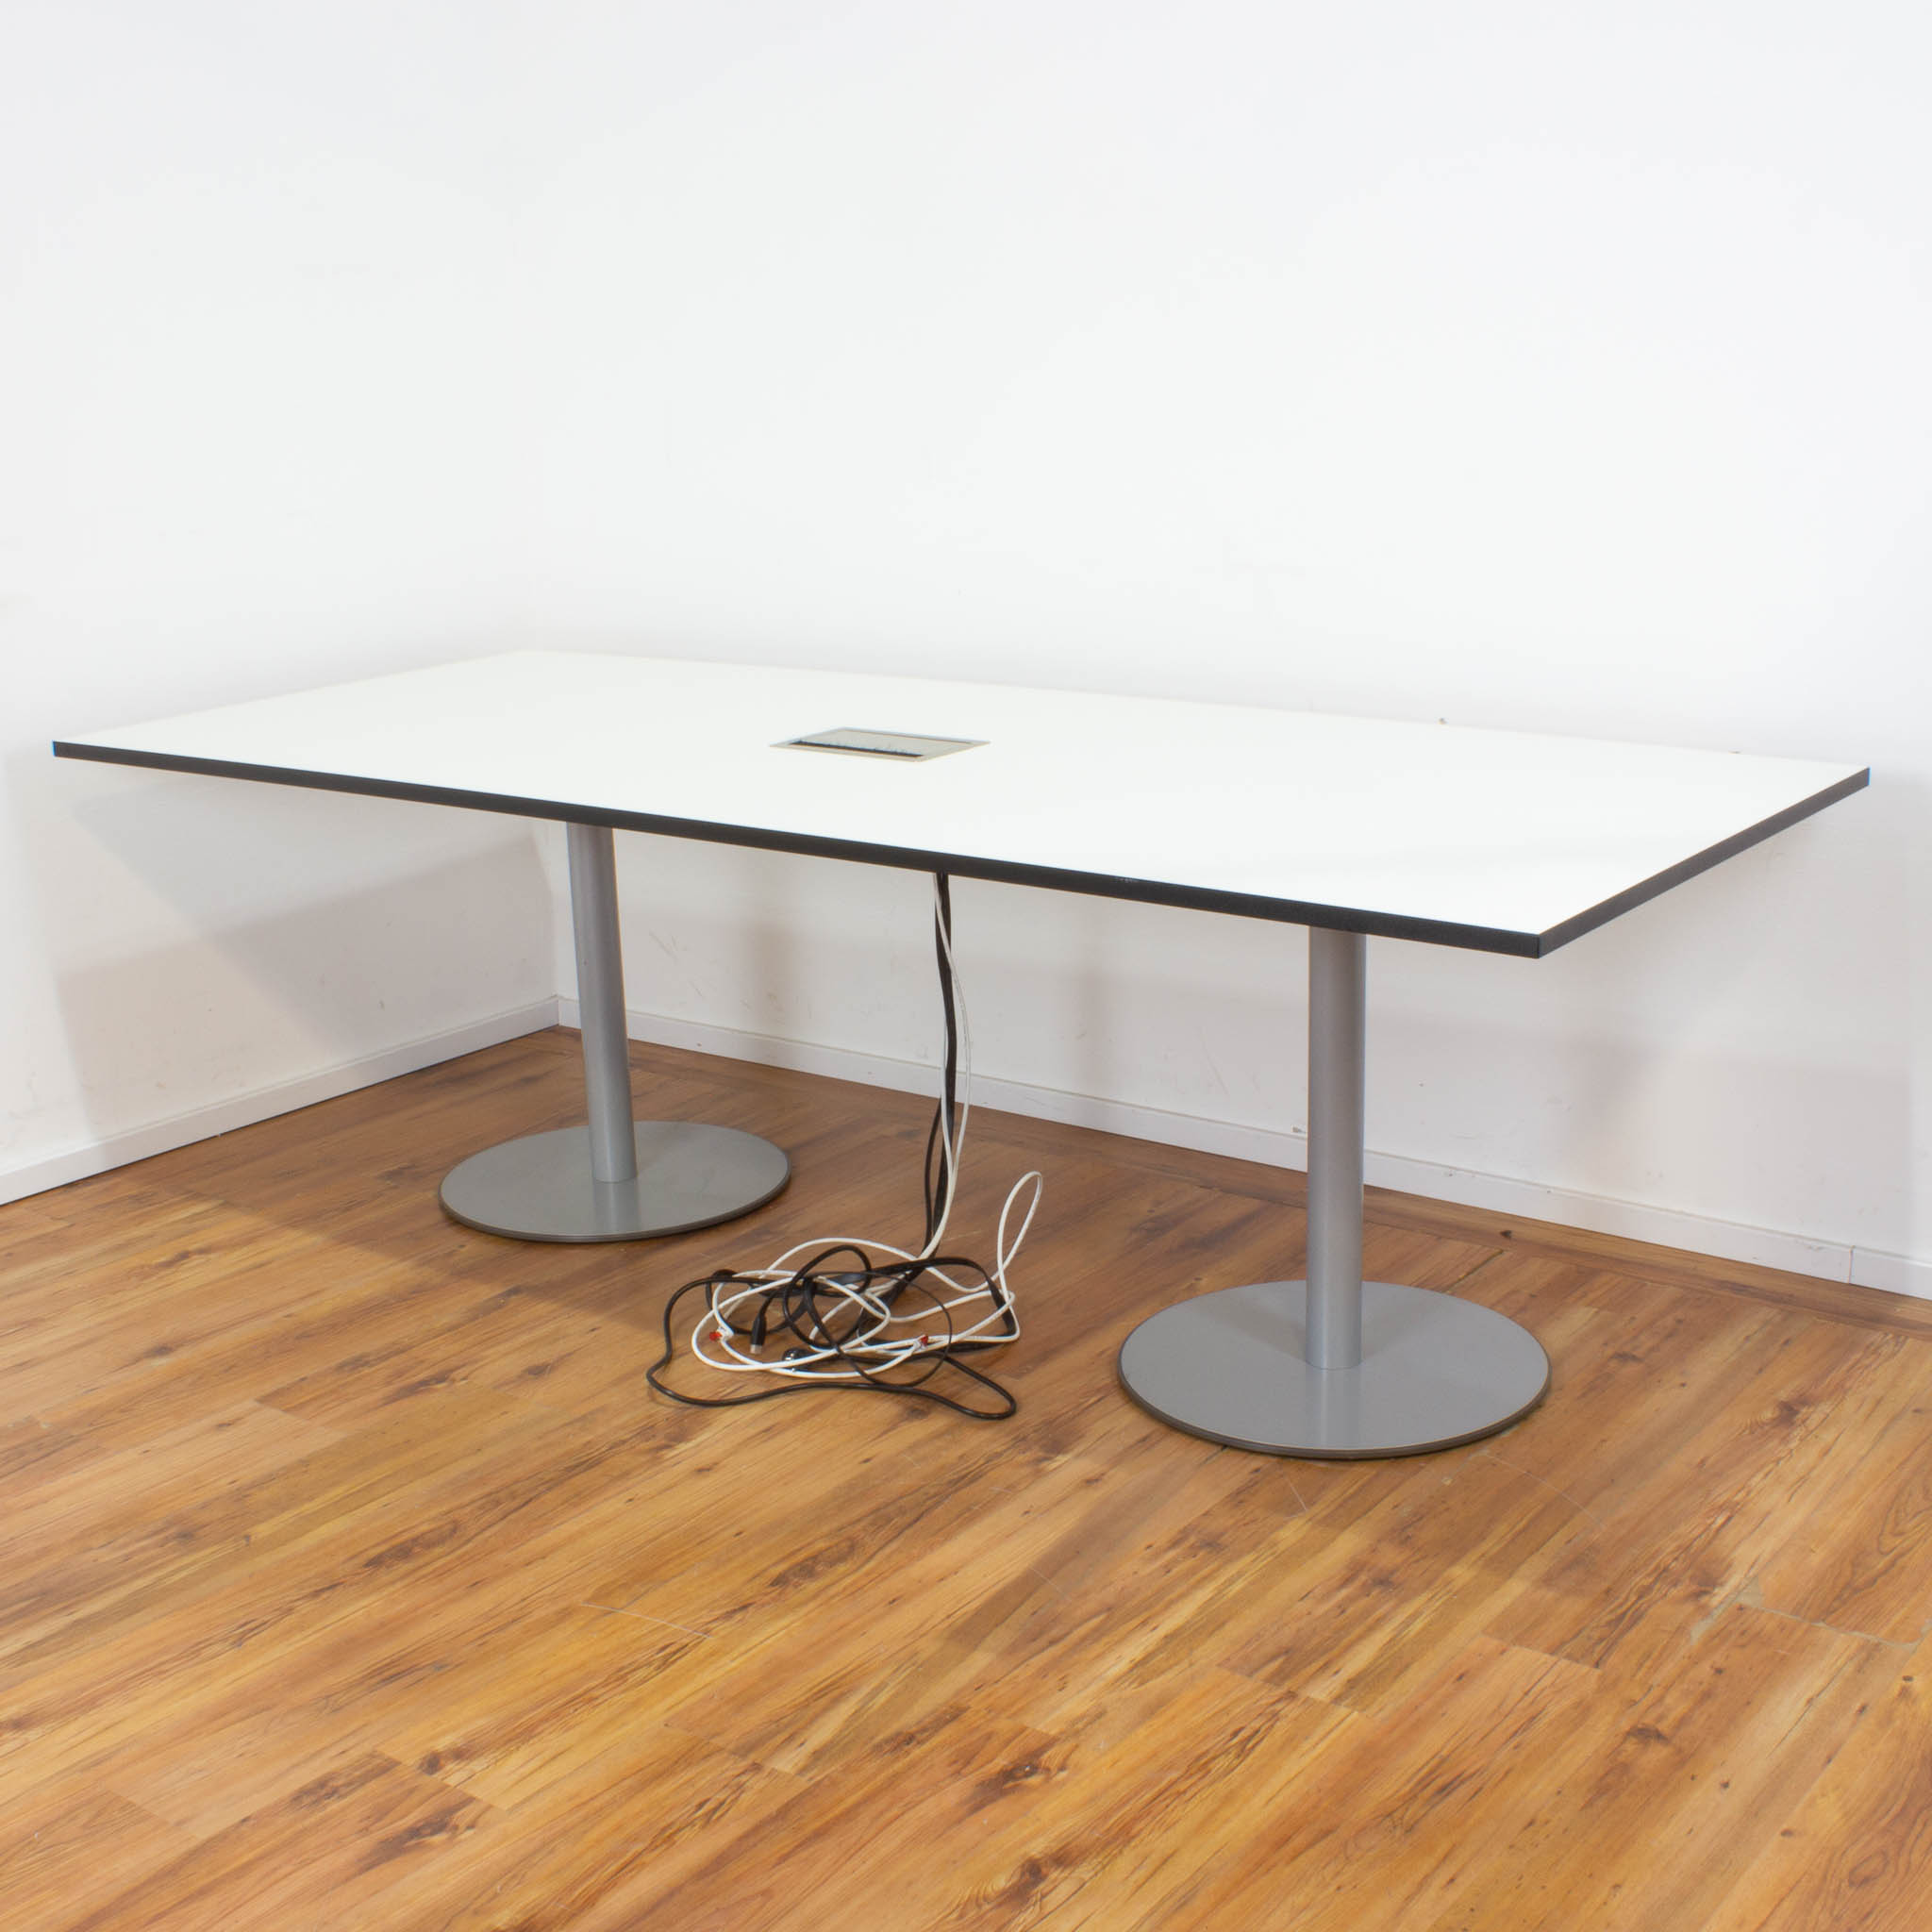 Konferenztisch mit Netzwerkport - 240 x 100 cm - weiß